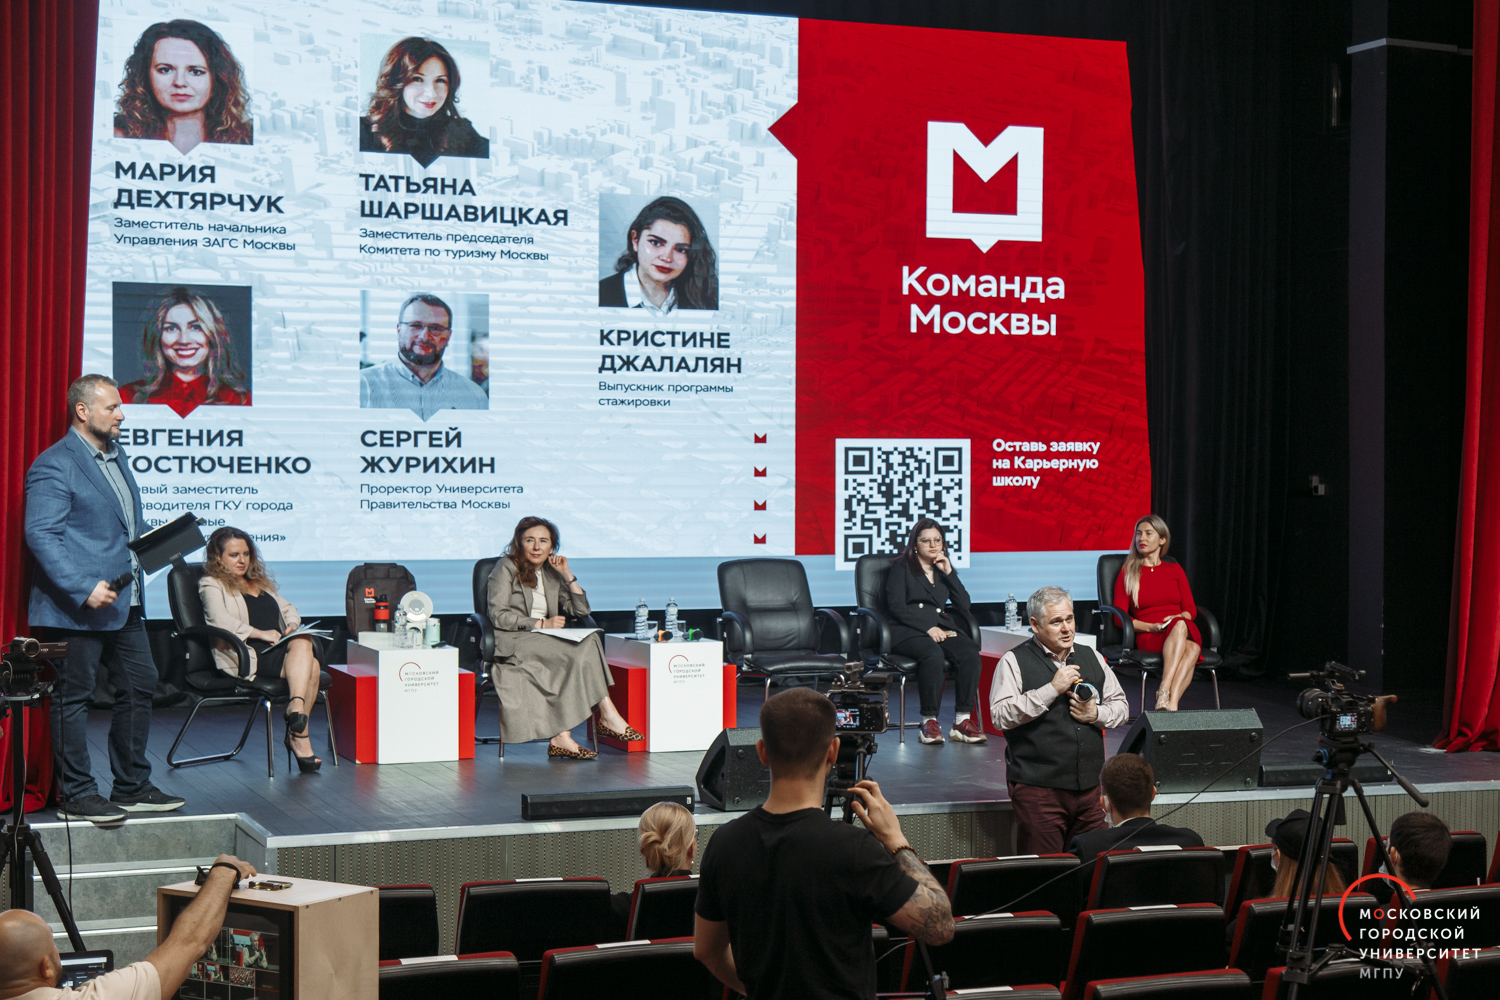 «Команда Москвы» приглашает на онлайн-встречи